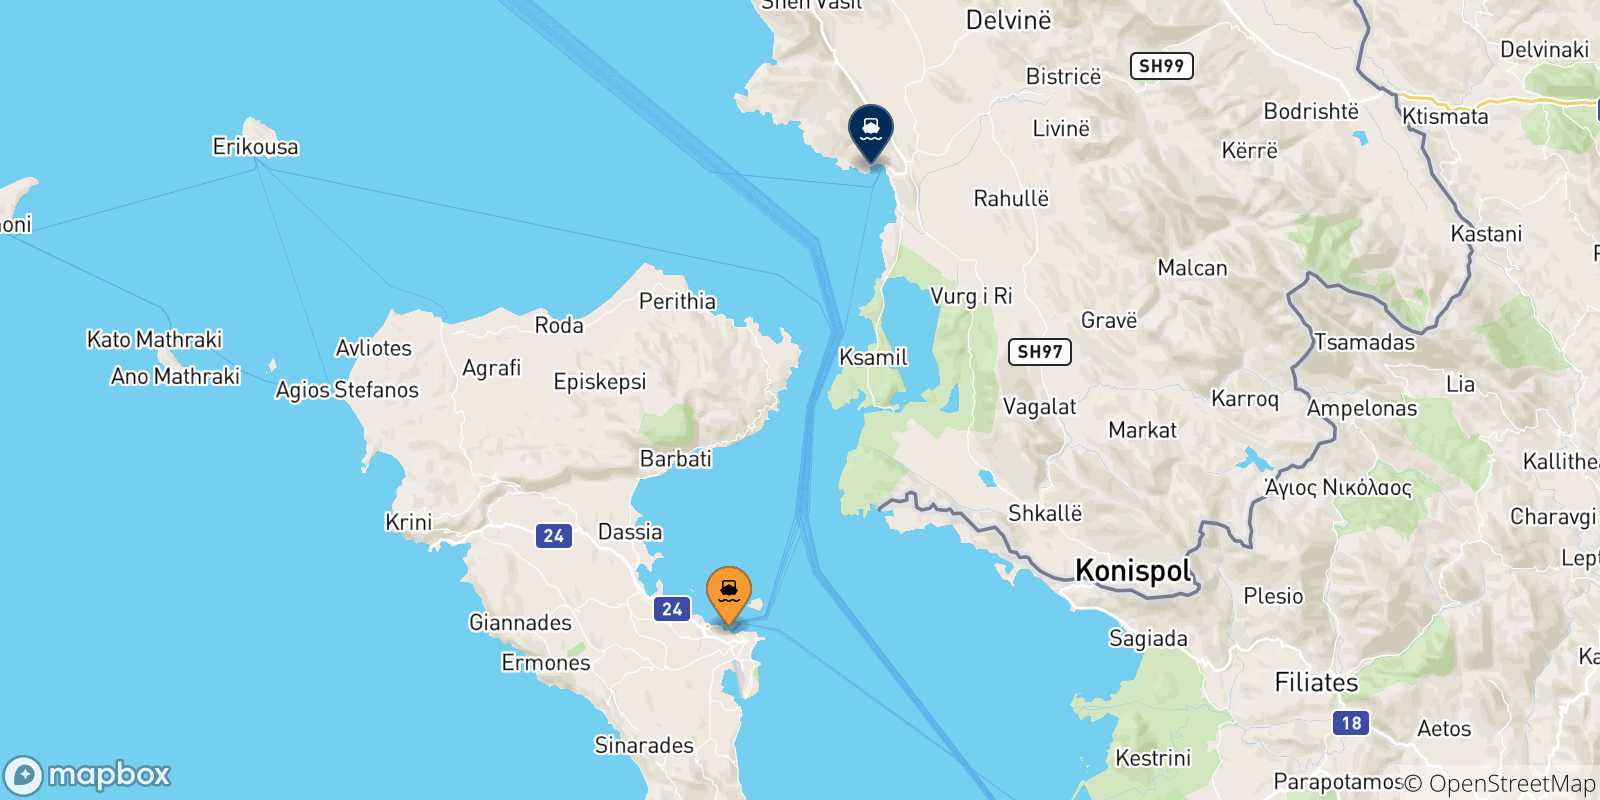 Mappa delle possibili rotte tra le Isole Ionie e Saranda